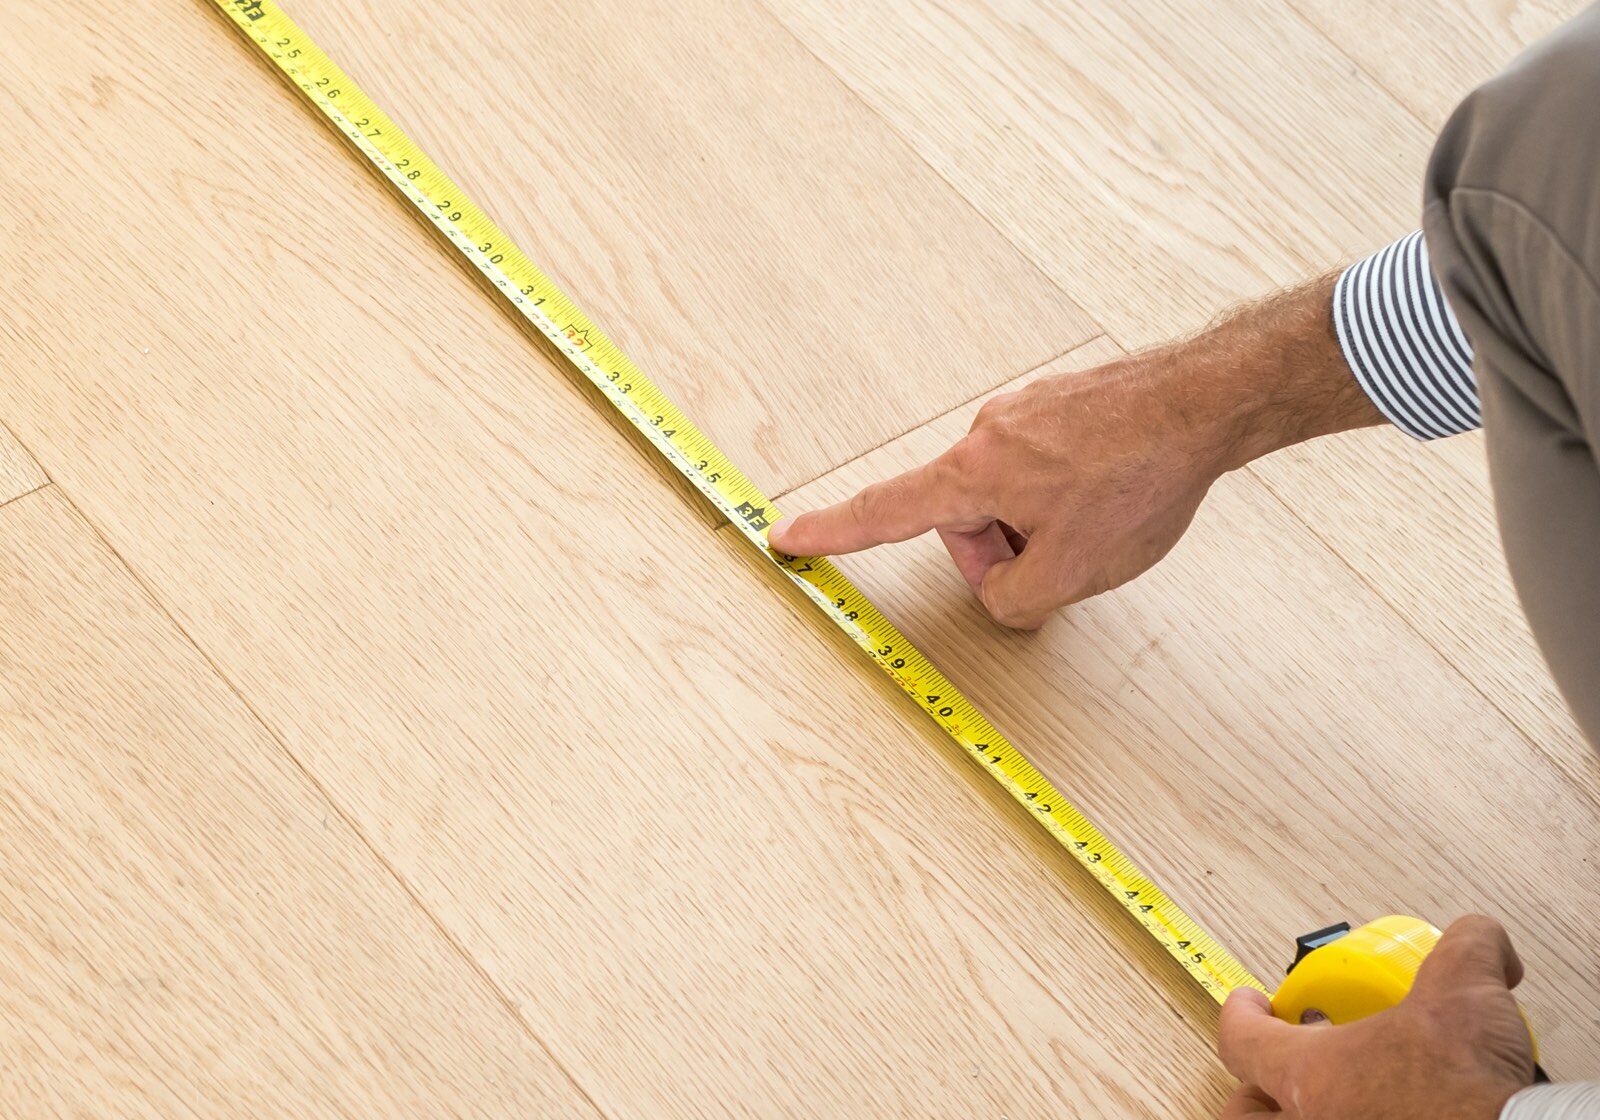 measure flooring